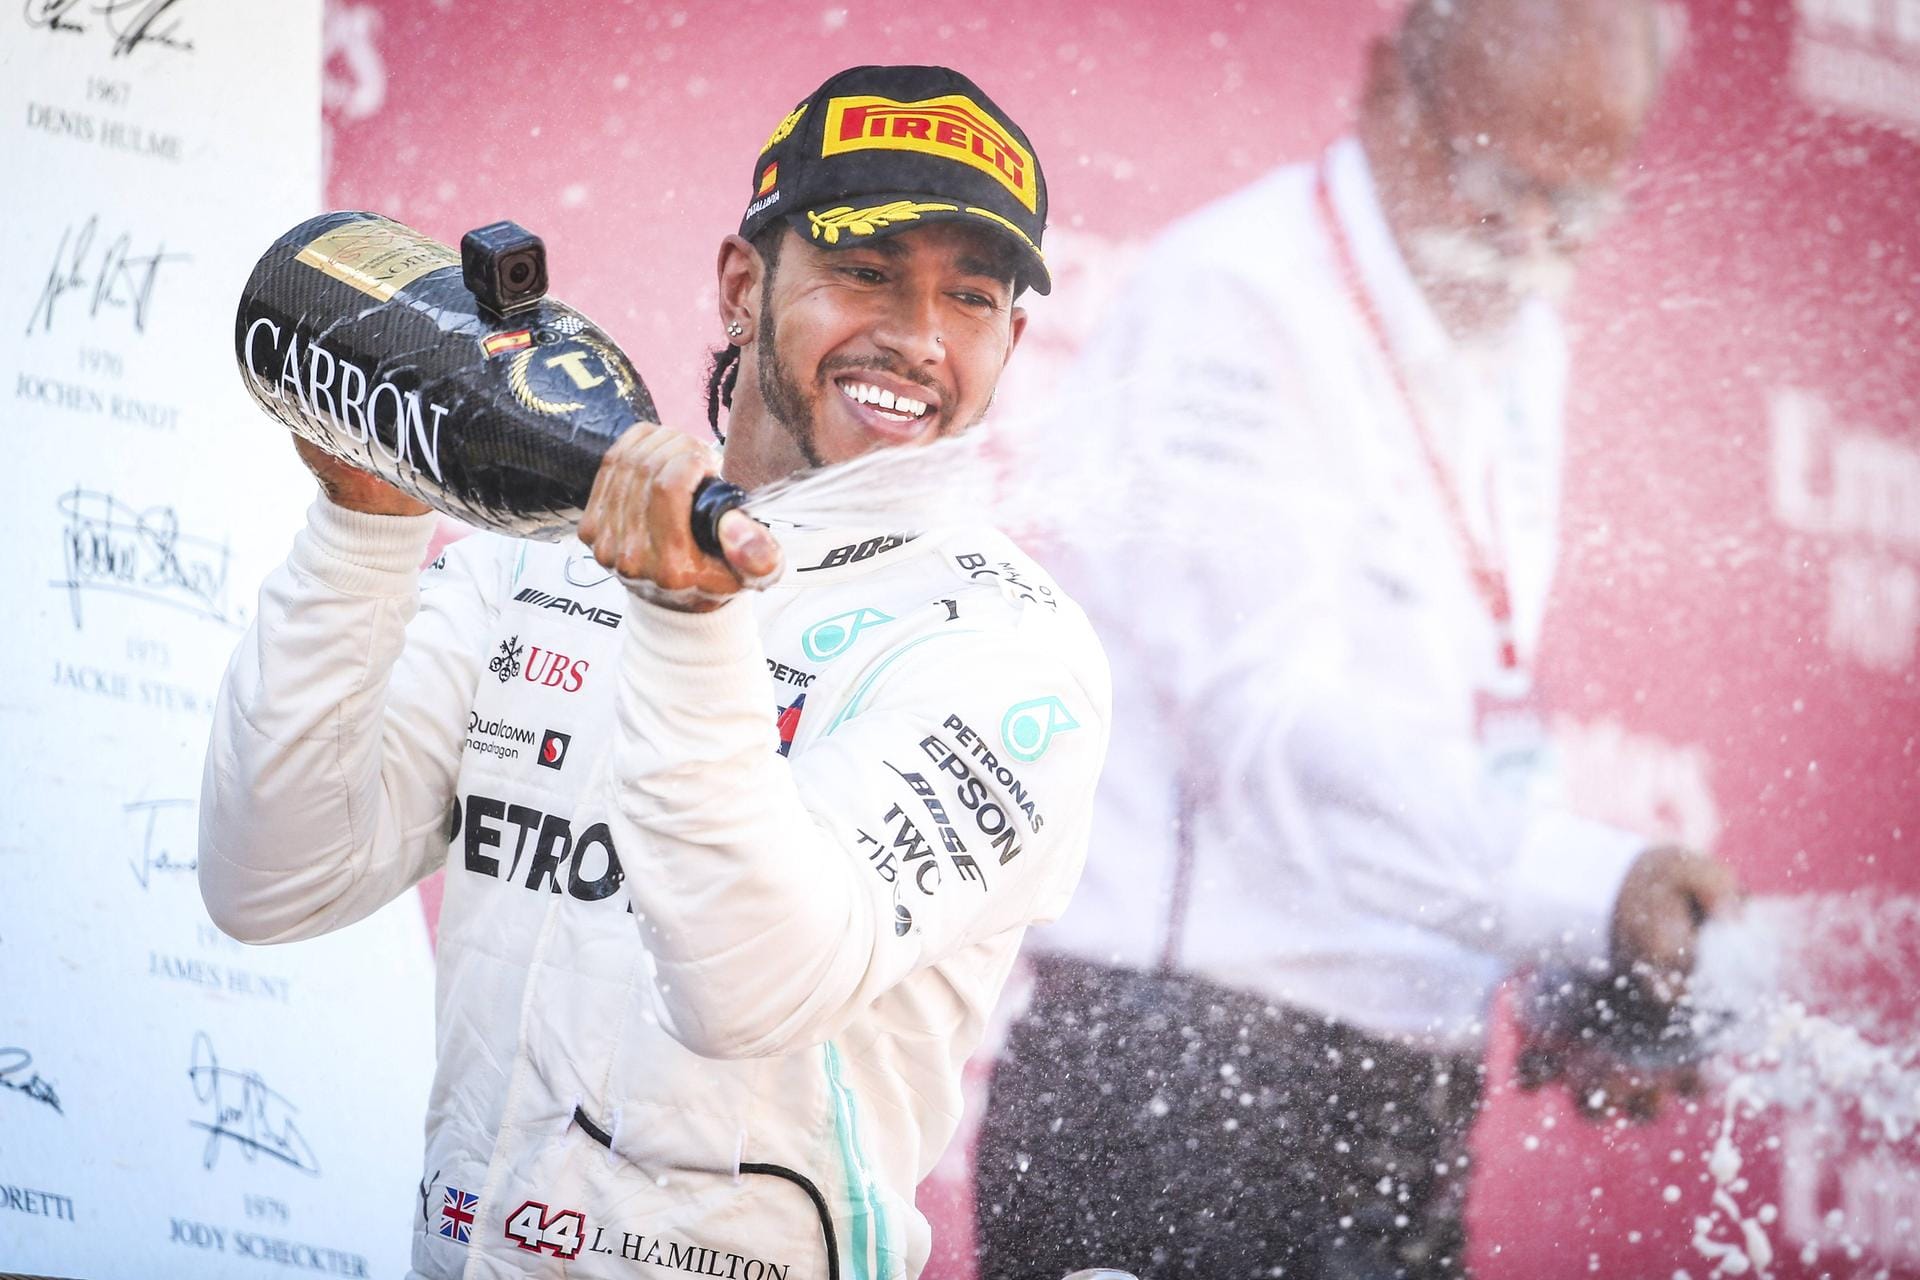 Marca (Spanien): "Auf den ersten 100 Metern eines eindrucksvollen Starts gab Lewis Hamilton Valtteri Bottas den Schlag zurück, den dieser ihm versetzt hatte - jene sechs Zehntel am Ende des Qualifyings am Samstag -, und dies reichte für ihn aus, um sich an die Spitze zu setzen und dies während des gesamten Rennens beizubehalten, hin zum fünften Mercedes-Sieg in Folge. Anders formuliert: Eine fünfte Schlappe – aufeinanderfolgend, historisch, schmerzhaft und überwältigend für Maranello."